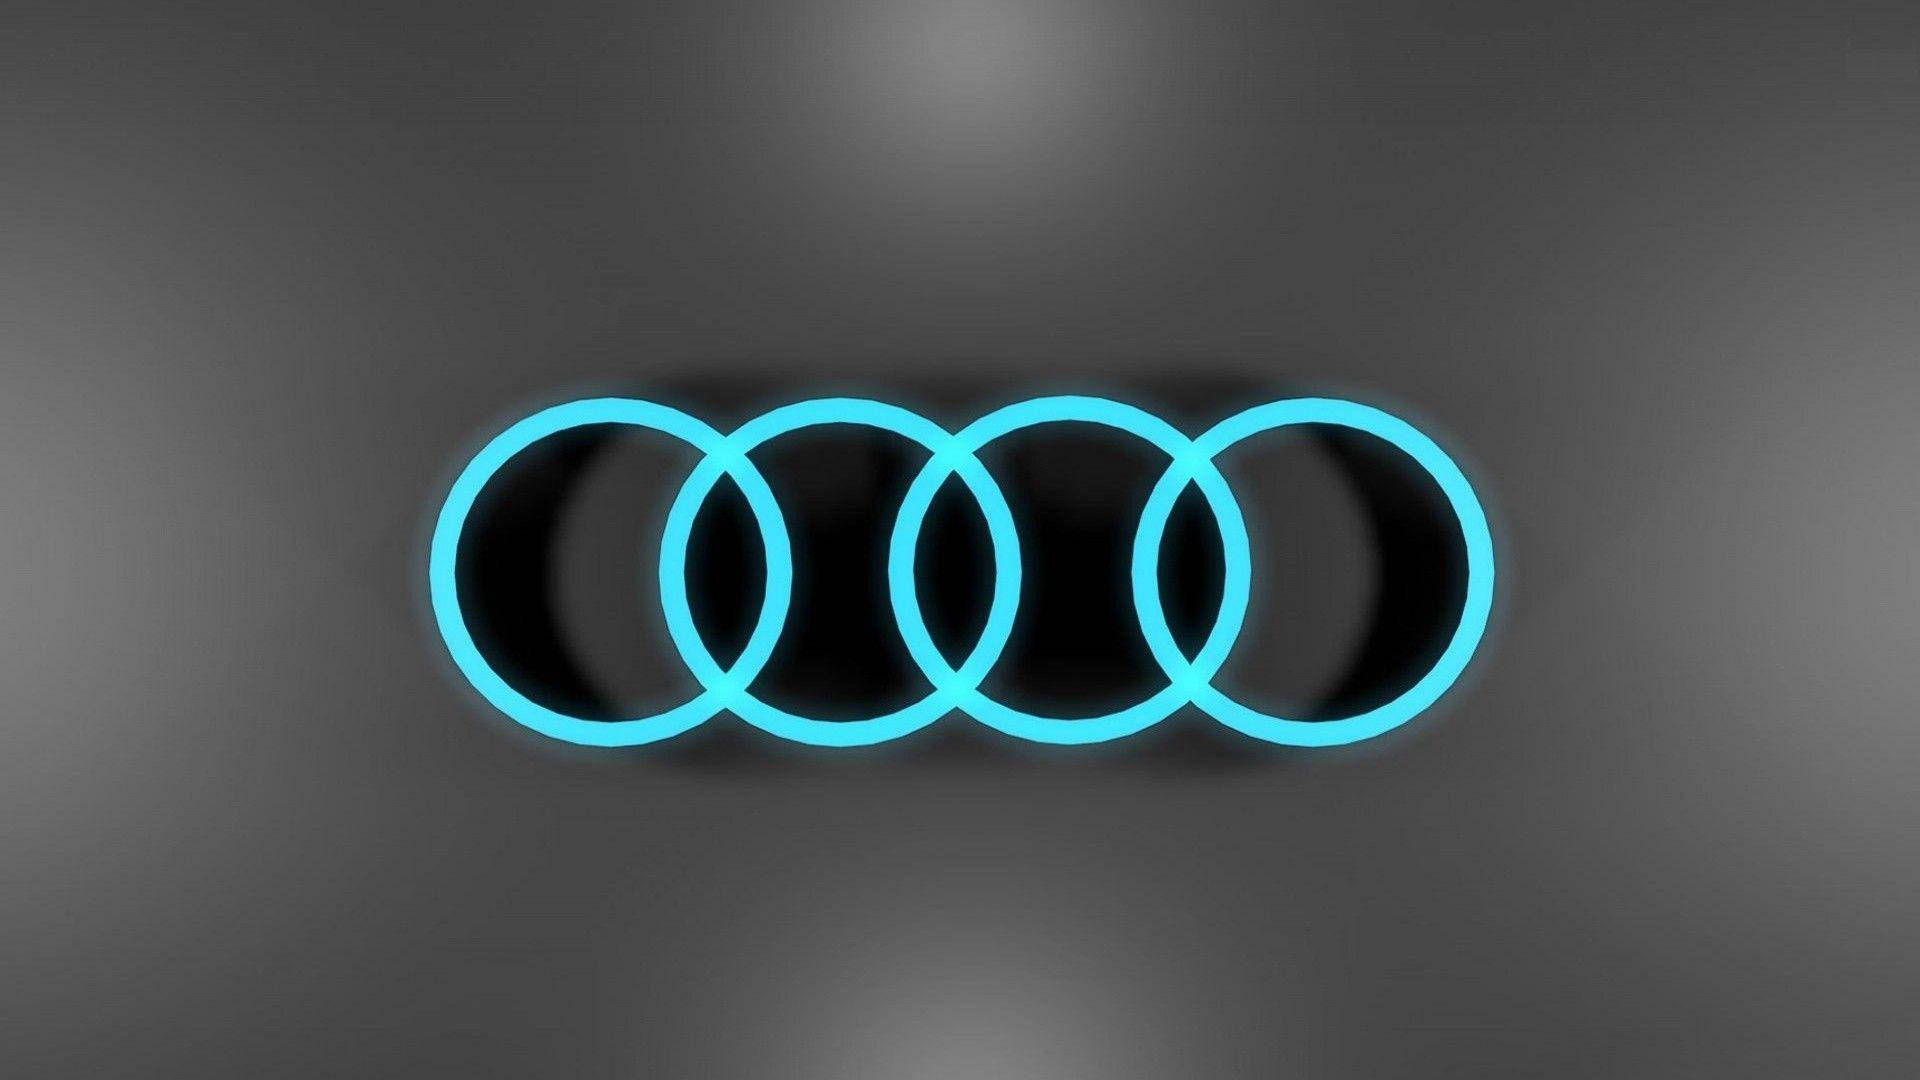 Audi Cool Logos Background